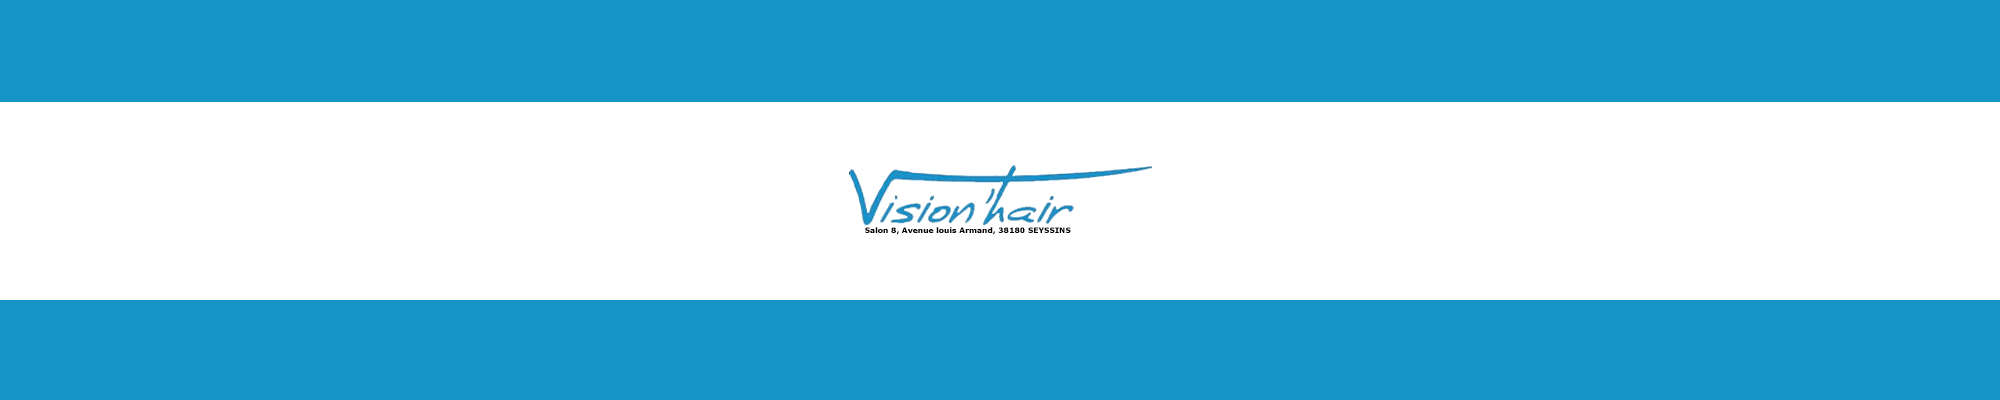 Vision'Hair